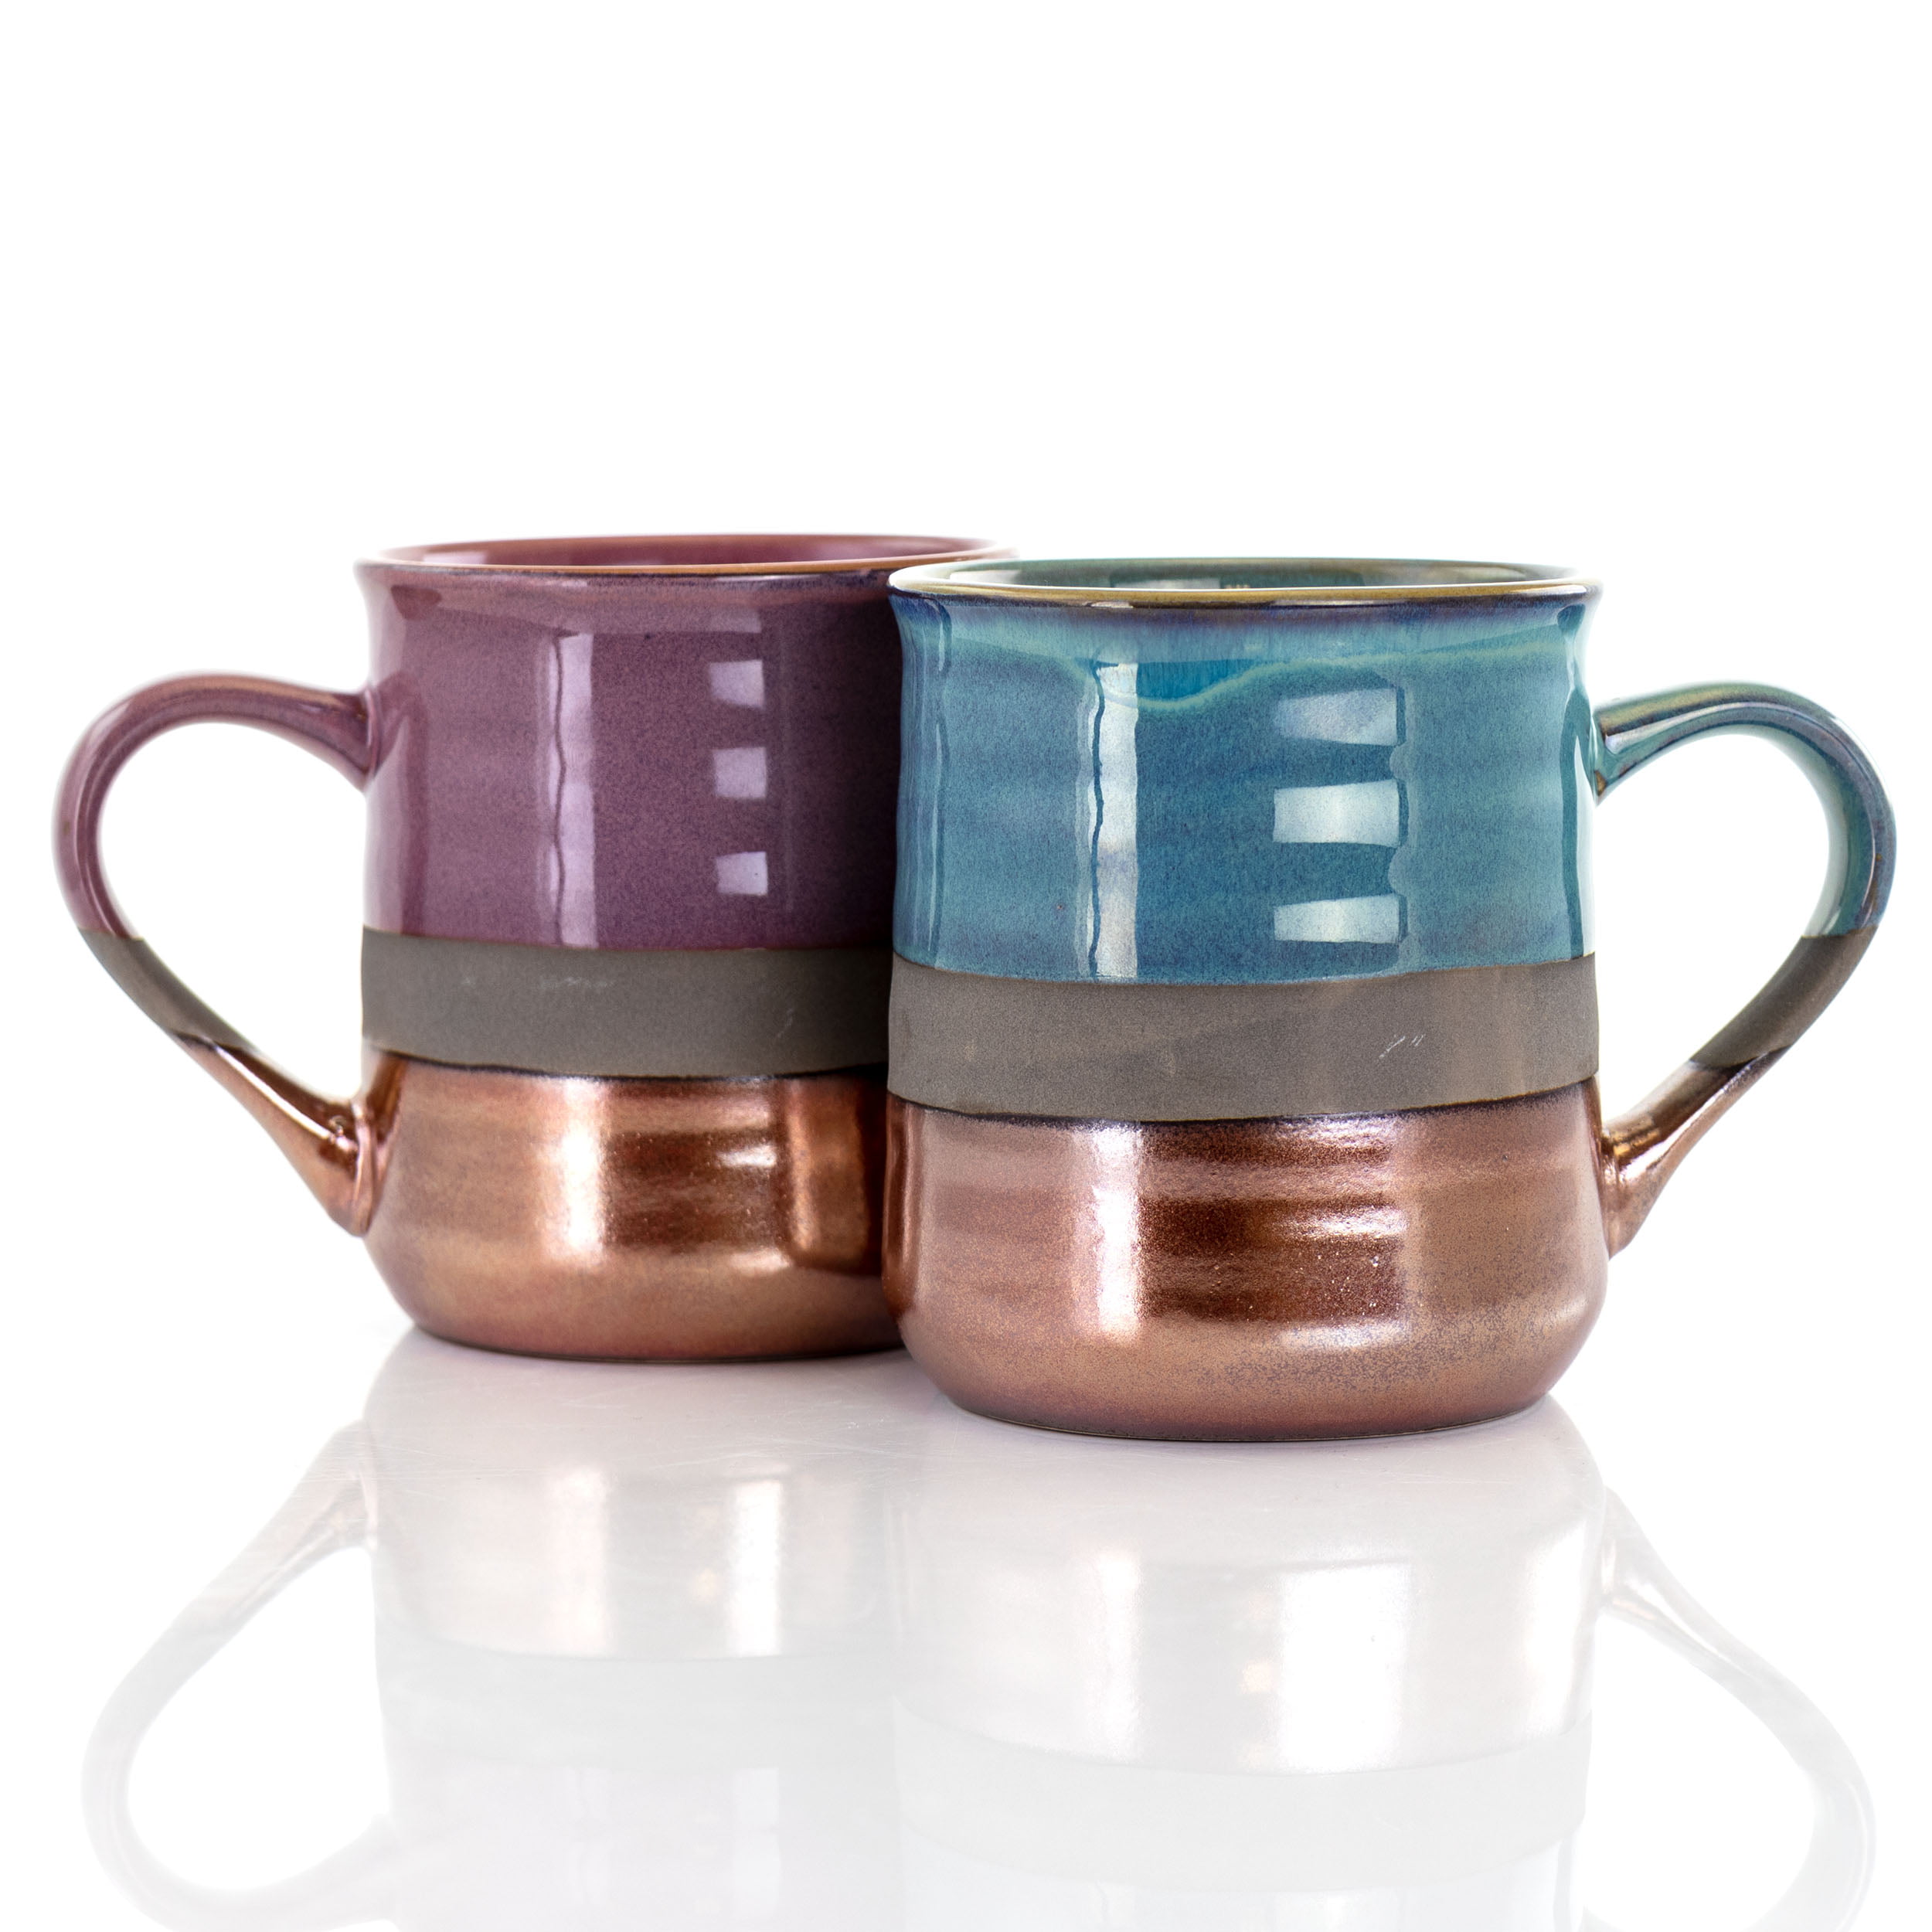 Gibson Home Color Café 13 Piece Assorted Color Stoneware Mug Set w/Metal Rack and Saucer Set